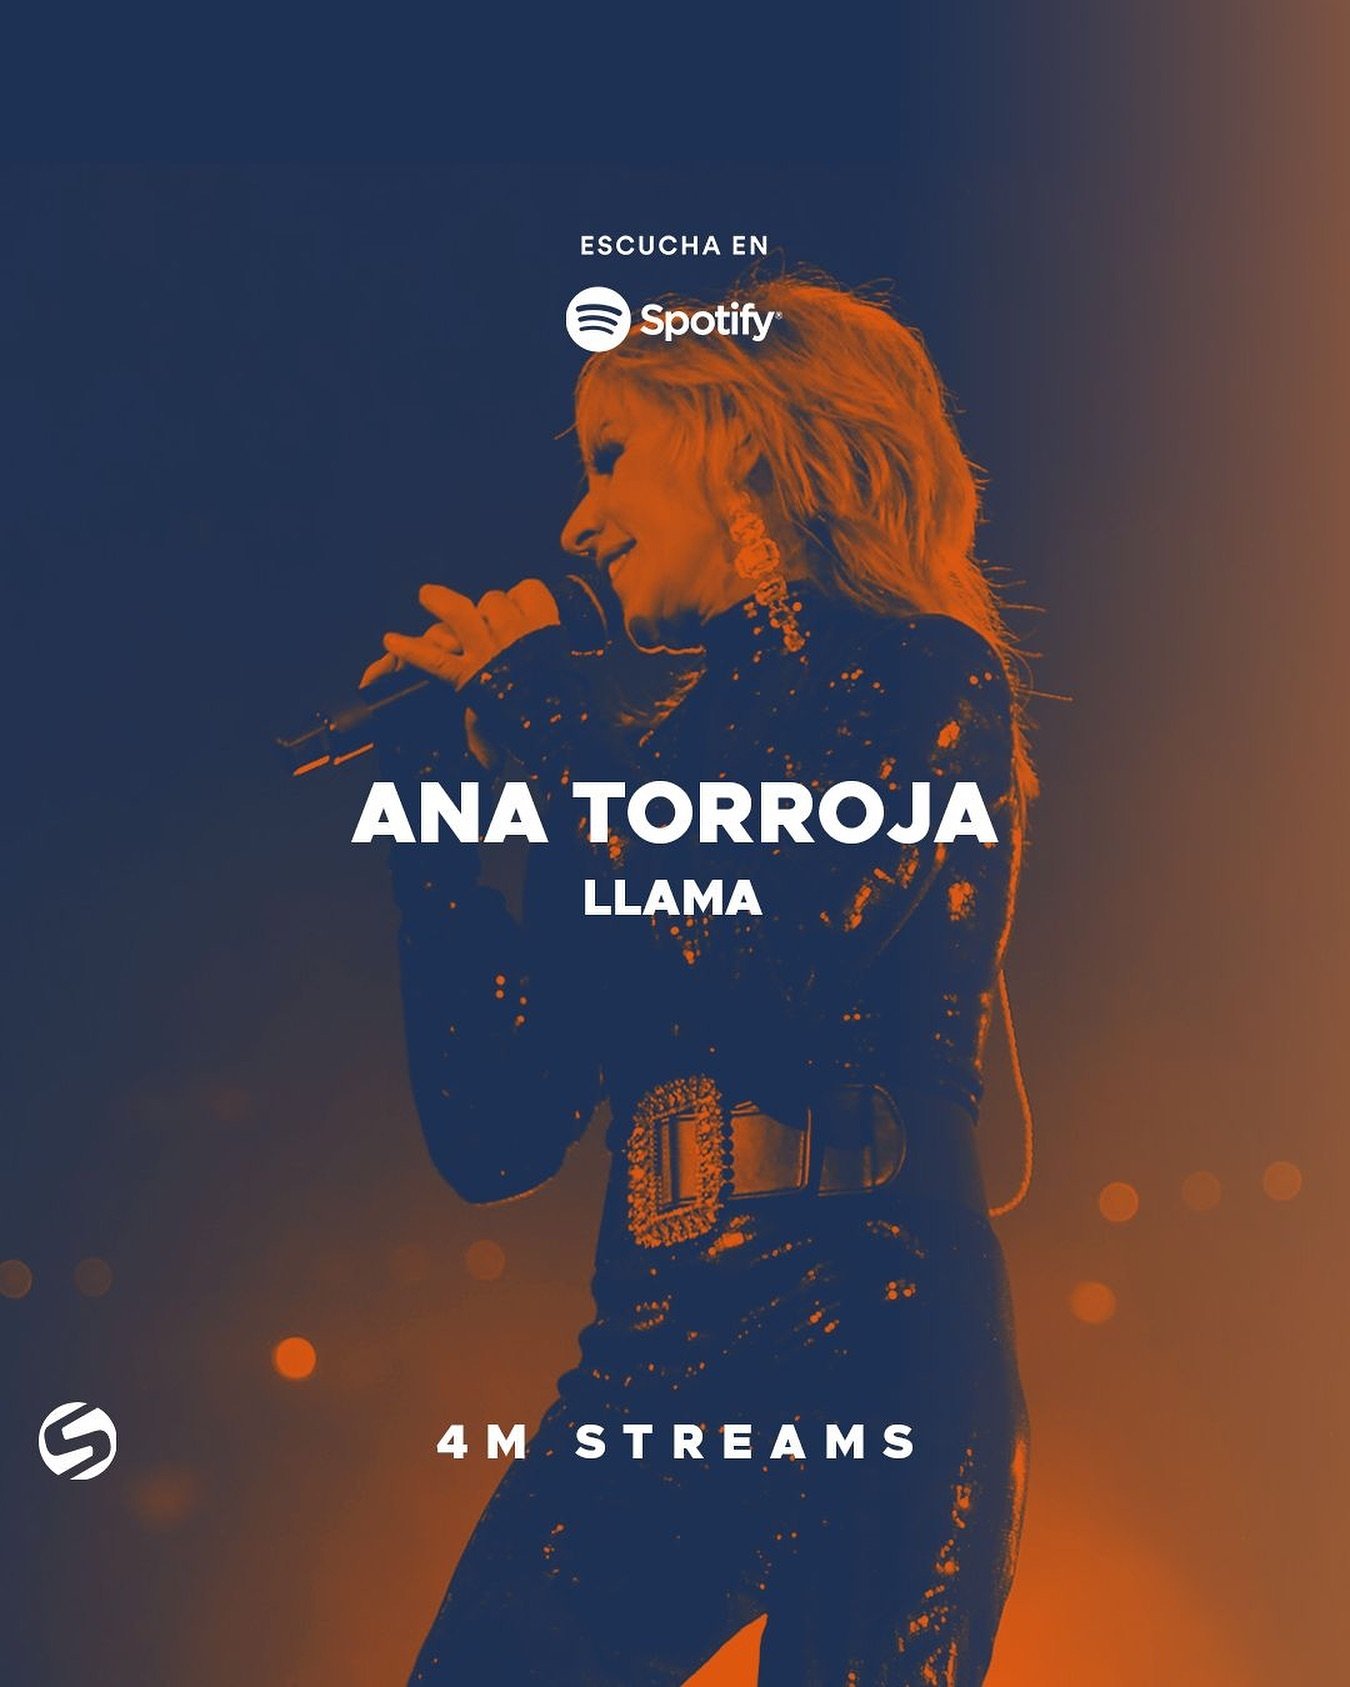 #Llama de @ana_torroja supera 4 millones de streams en @spotifymexico